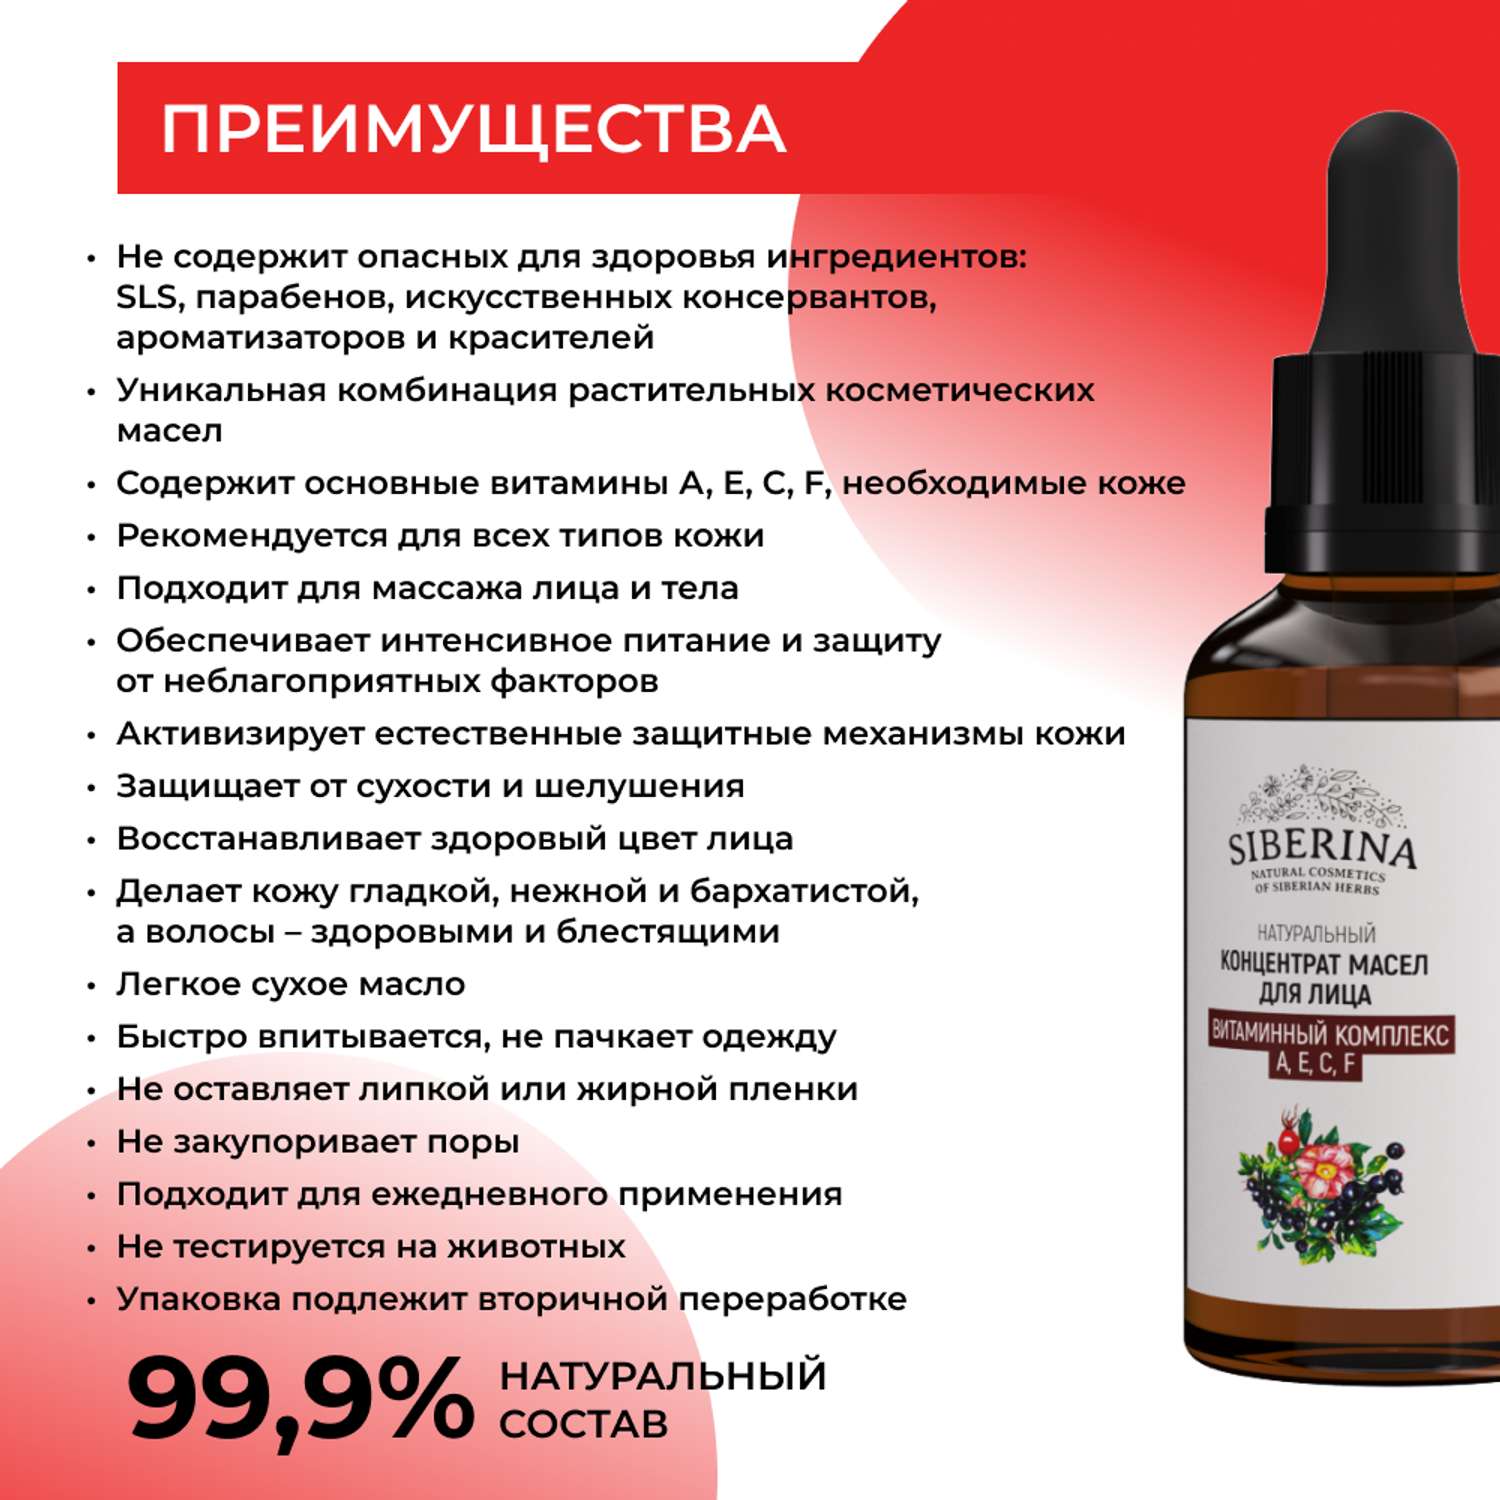 Концентрат масел Siberina натуральный «Витаминный комплекс А Е С F» для лица и волос 30 мл - фото 3